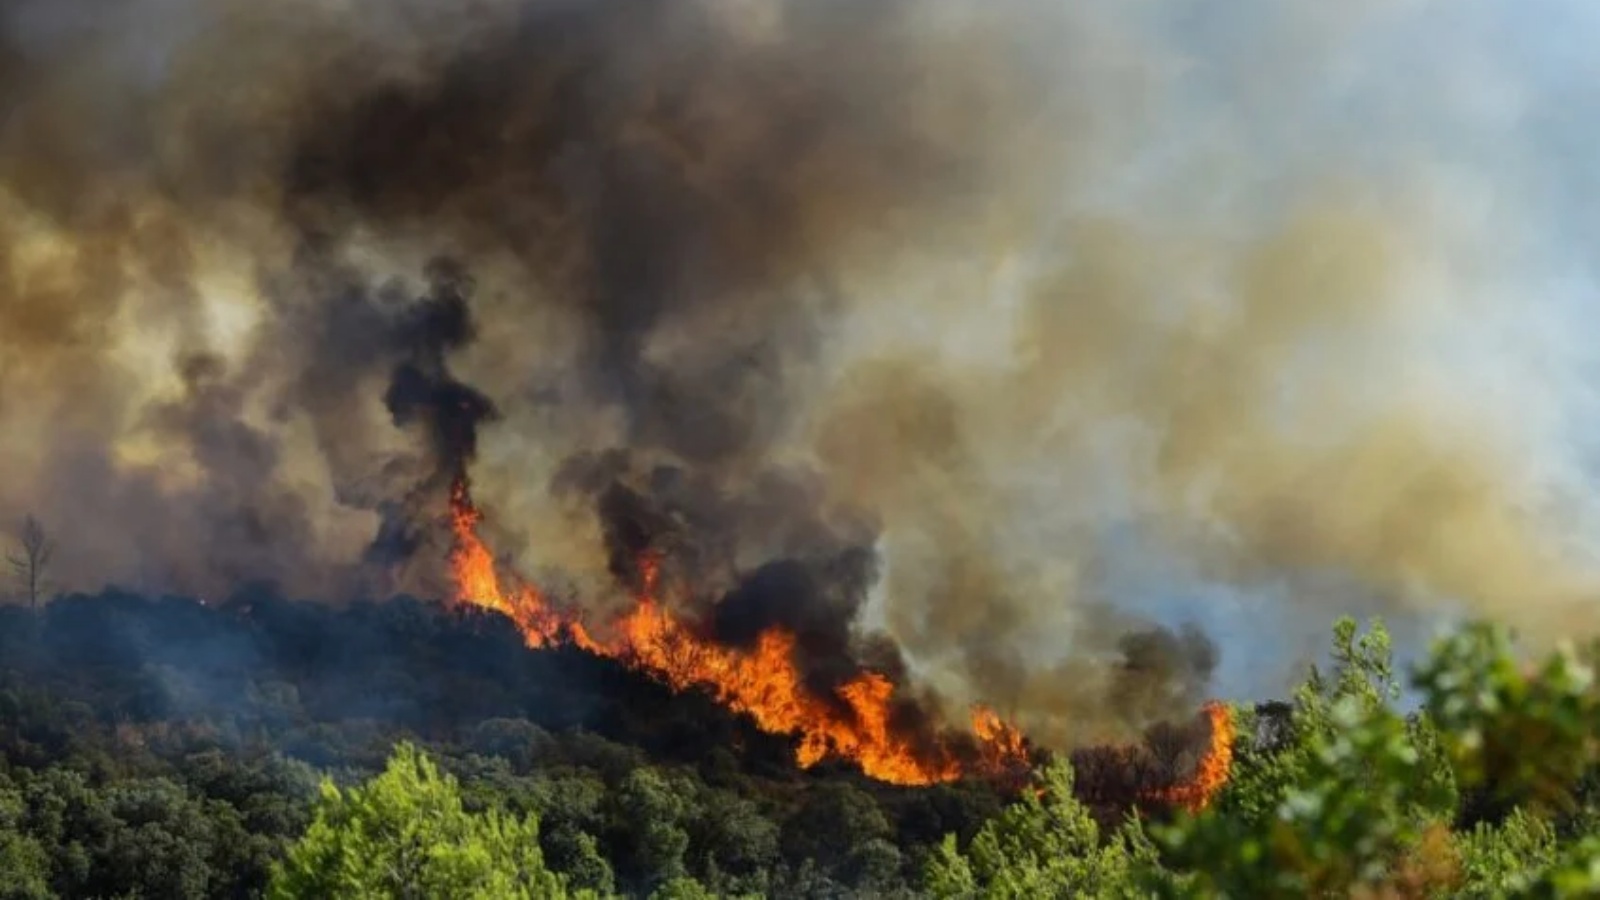 التقطت هذه الصورة في 26 يوليو 2022، وتُظهر ألسنة اللهب تتصاعد من حريق غابة في جنوب فرنسا